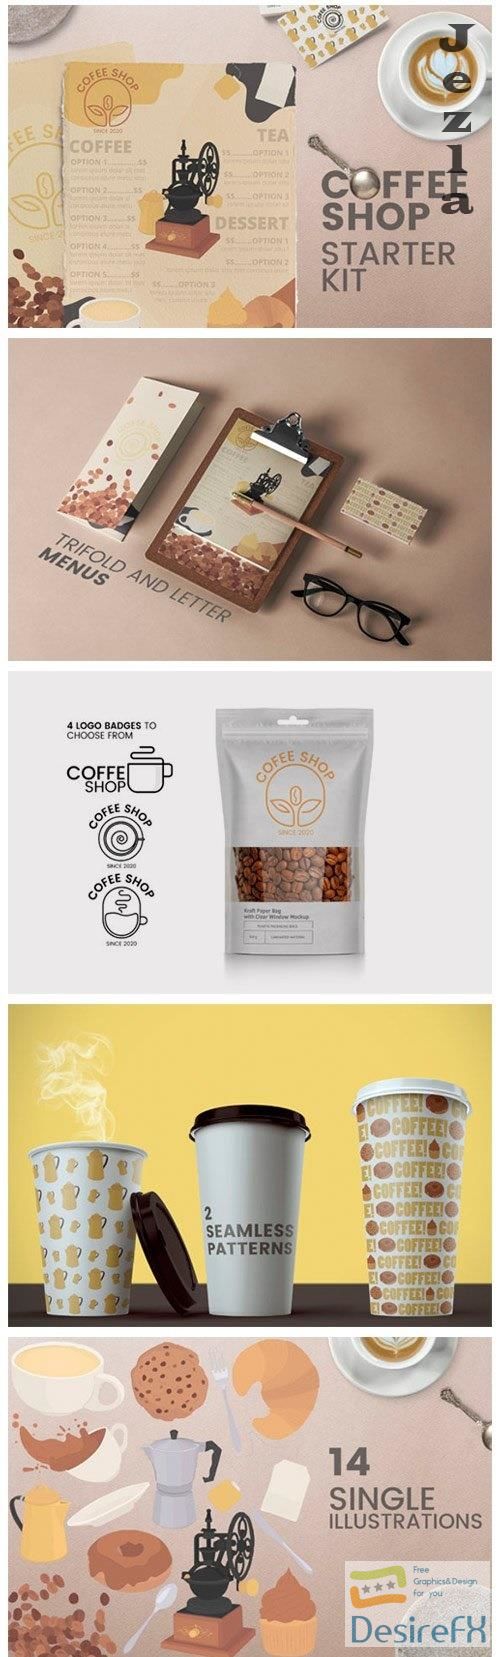 Coffee shop kit - Menus logos MORE! - 4983078